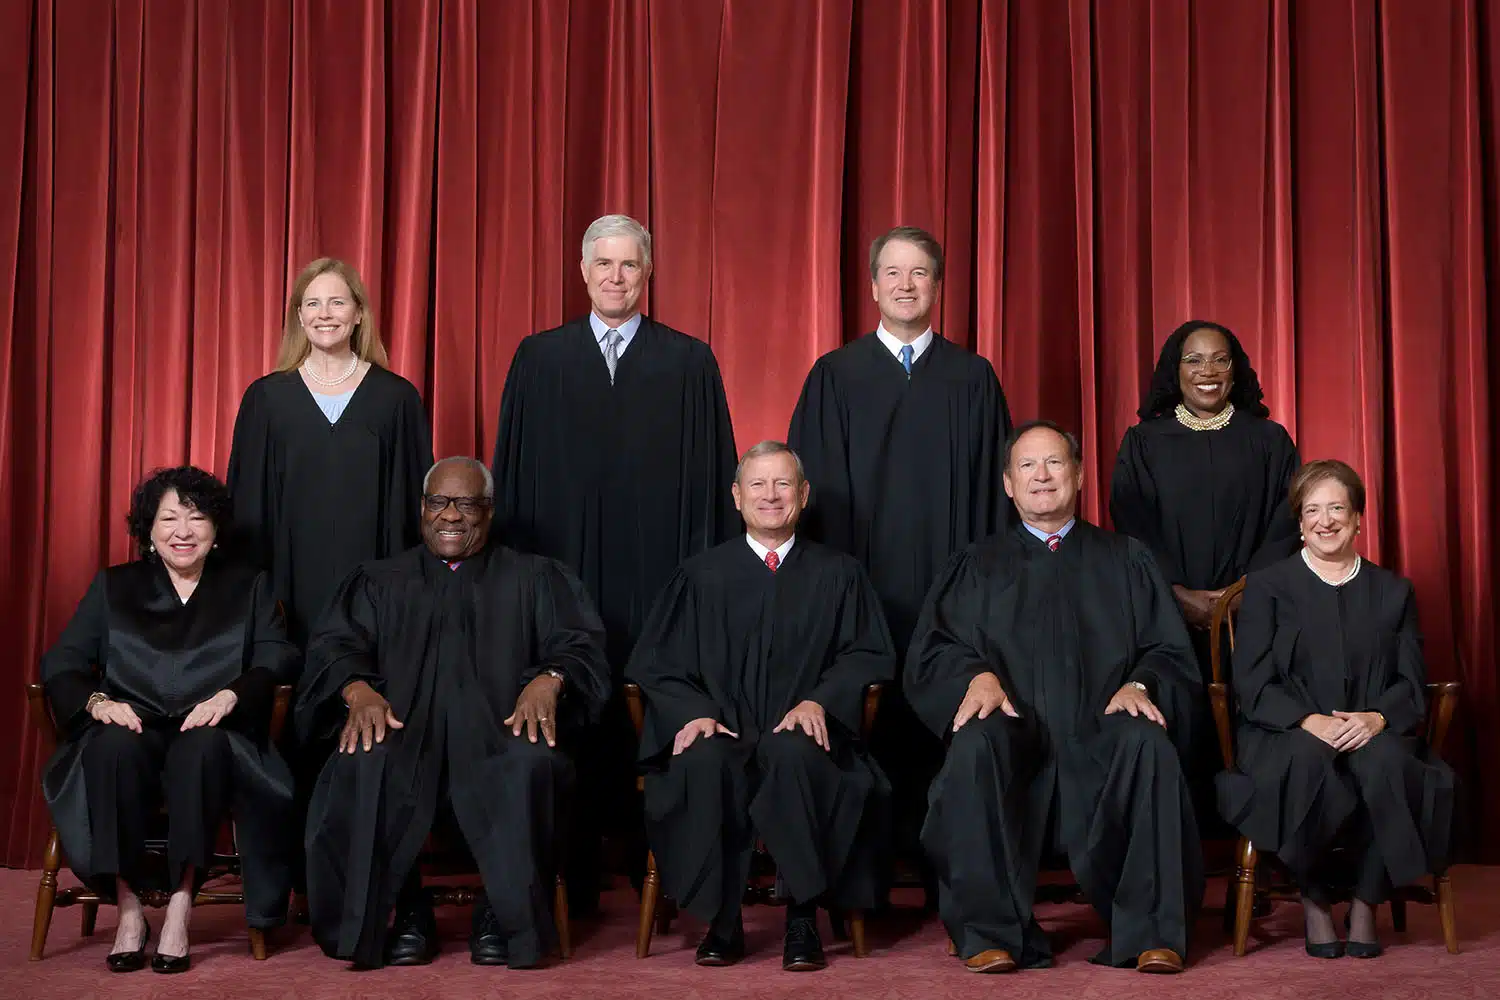 Los 9 jueces del Tribunal Supremo estadounidense suscriben el primer código ético de la historia de este organismo